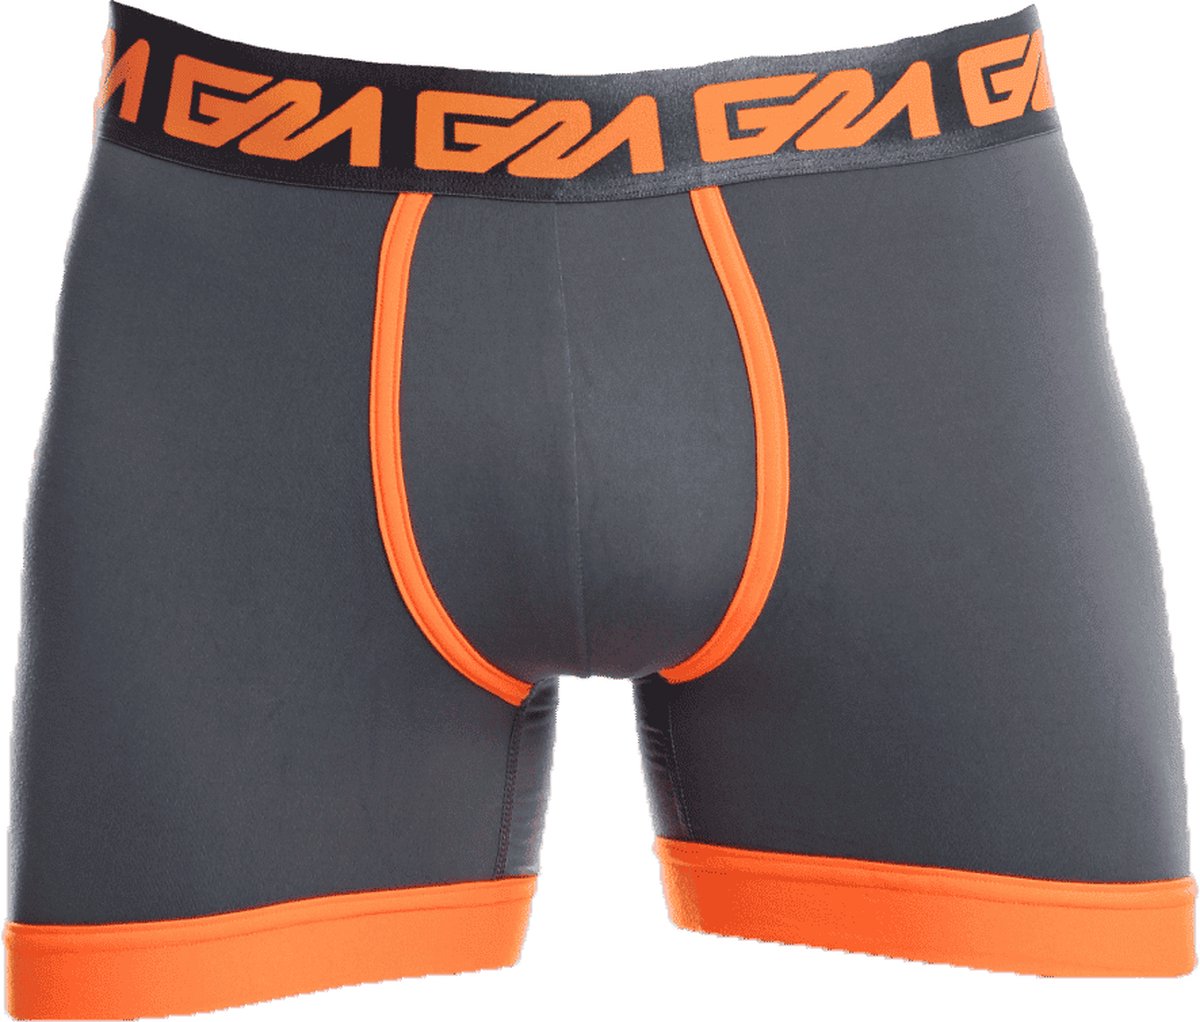 Garçon DODGE Boxershort - MAAT XL - Heren Ondergoed - Boxershort voor Man - Mannen Boxershort